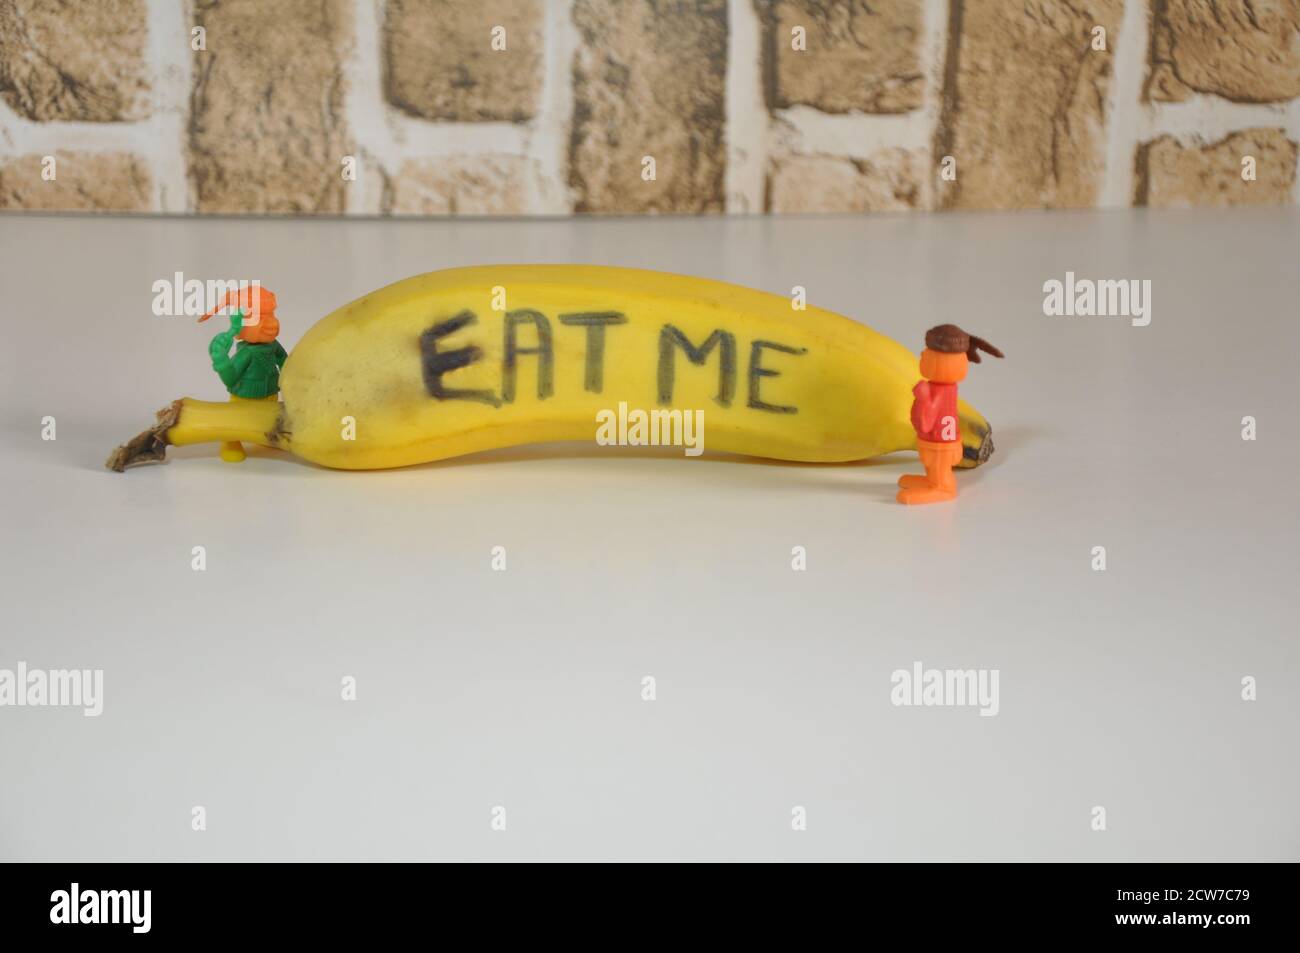 Banane. Obst mit Inschrift, ISS mich, mit Miniatur-Plastikspielzeug, das auf Obst schaut, weißer Sockel, Backsteinwand-Hintergrund, in Konzeptfoto, Brasilien, Stockfoto